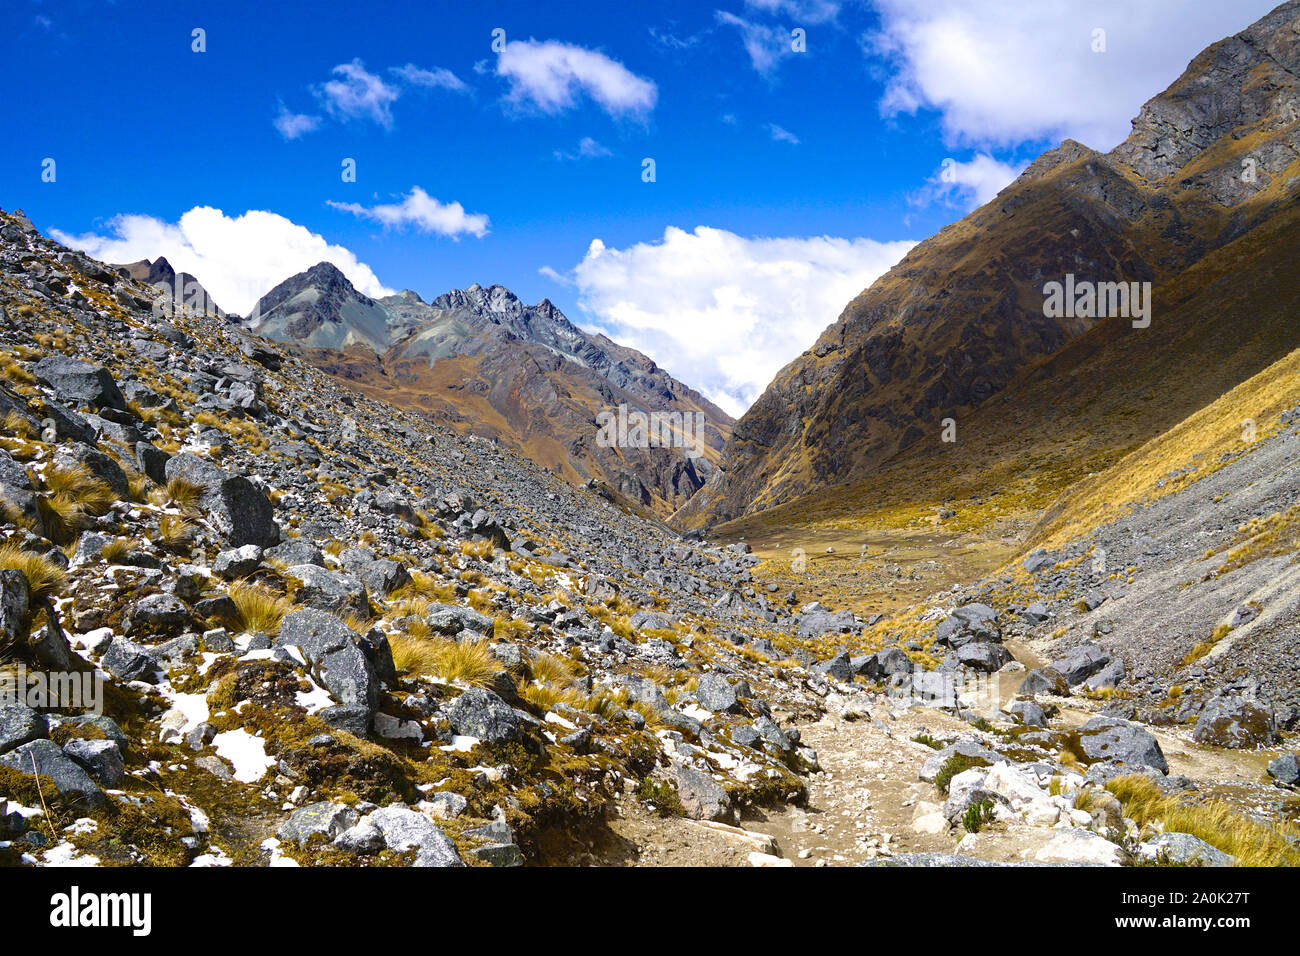 El Salkantay trek en Perú (algunas veces referido como el Salcantay trail) es la alternativa más popular caminata a Machu Picchu - ofrece a los excursionistas un increíblemente diversa experiencia de trekking, es relativamente fácil de acceder desde Cusco y a diferencia del Clásico Camino Inca, no se permiten limitaciones. El sendero estancias a través de increíbles paisajes donde la selva de tierras bajas da lugar a altas montañas alpinas con glaciares y ajustes, la más impresionante de las cuales es Nevada Salkantay. Foto de stock